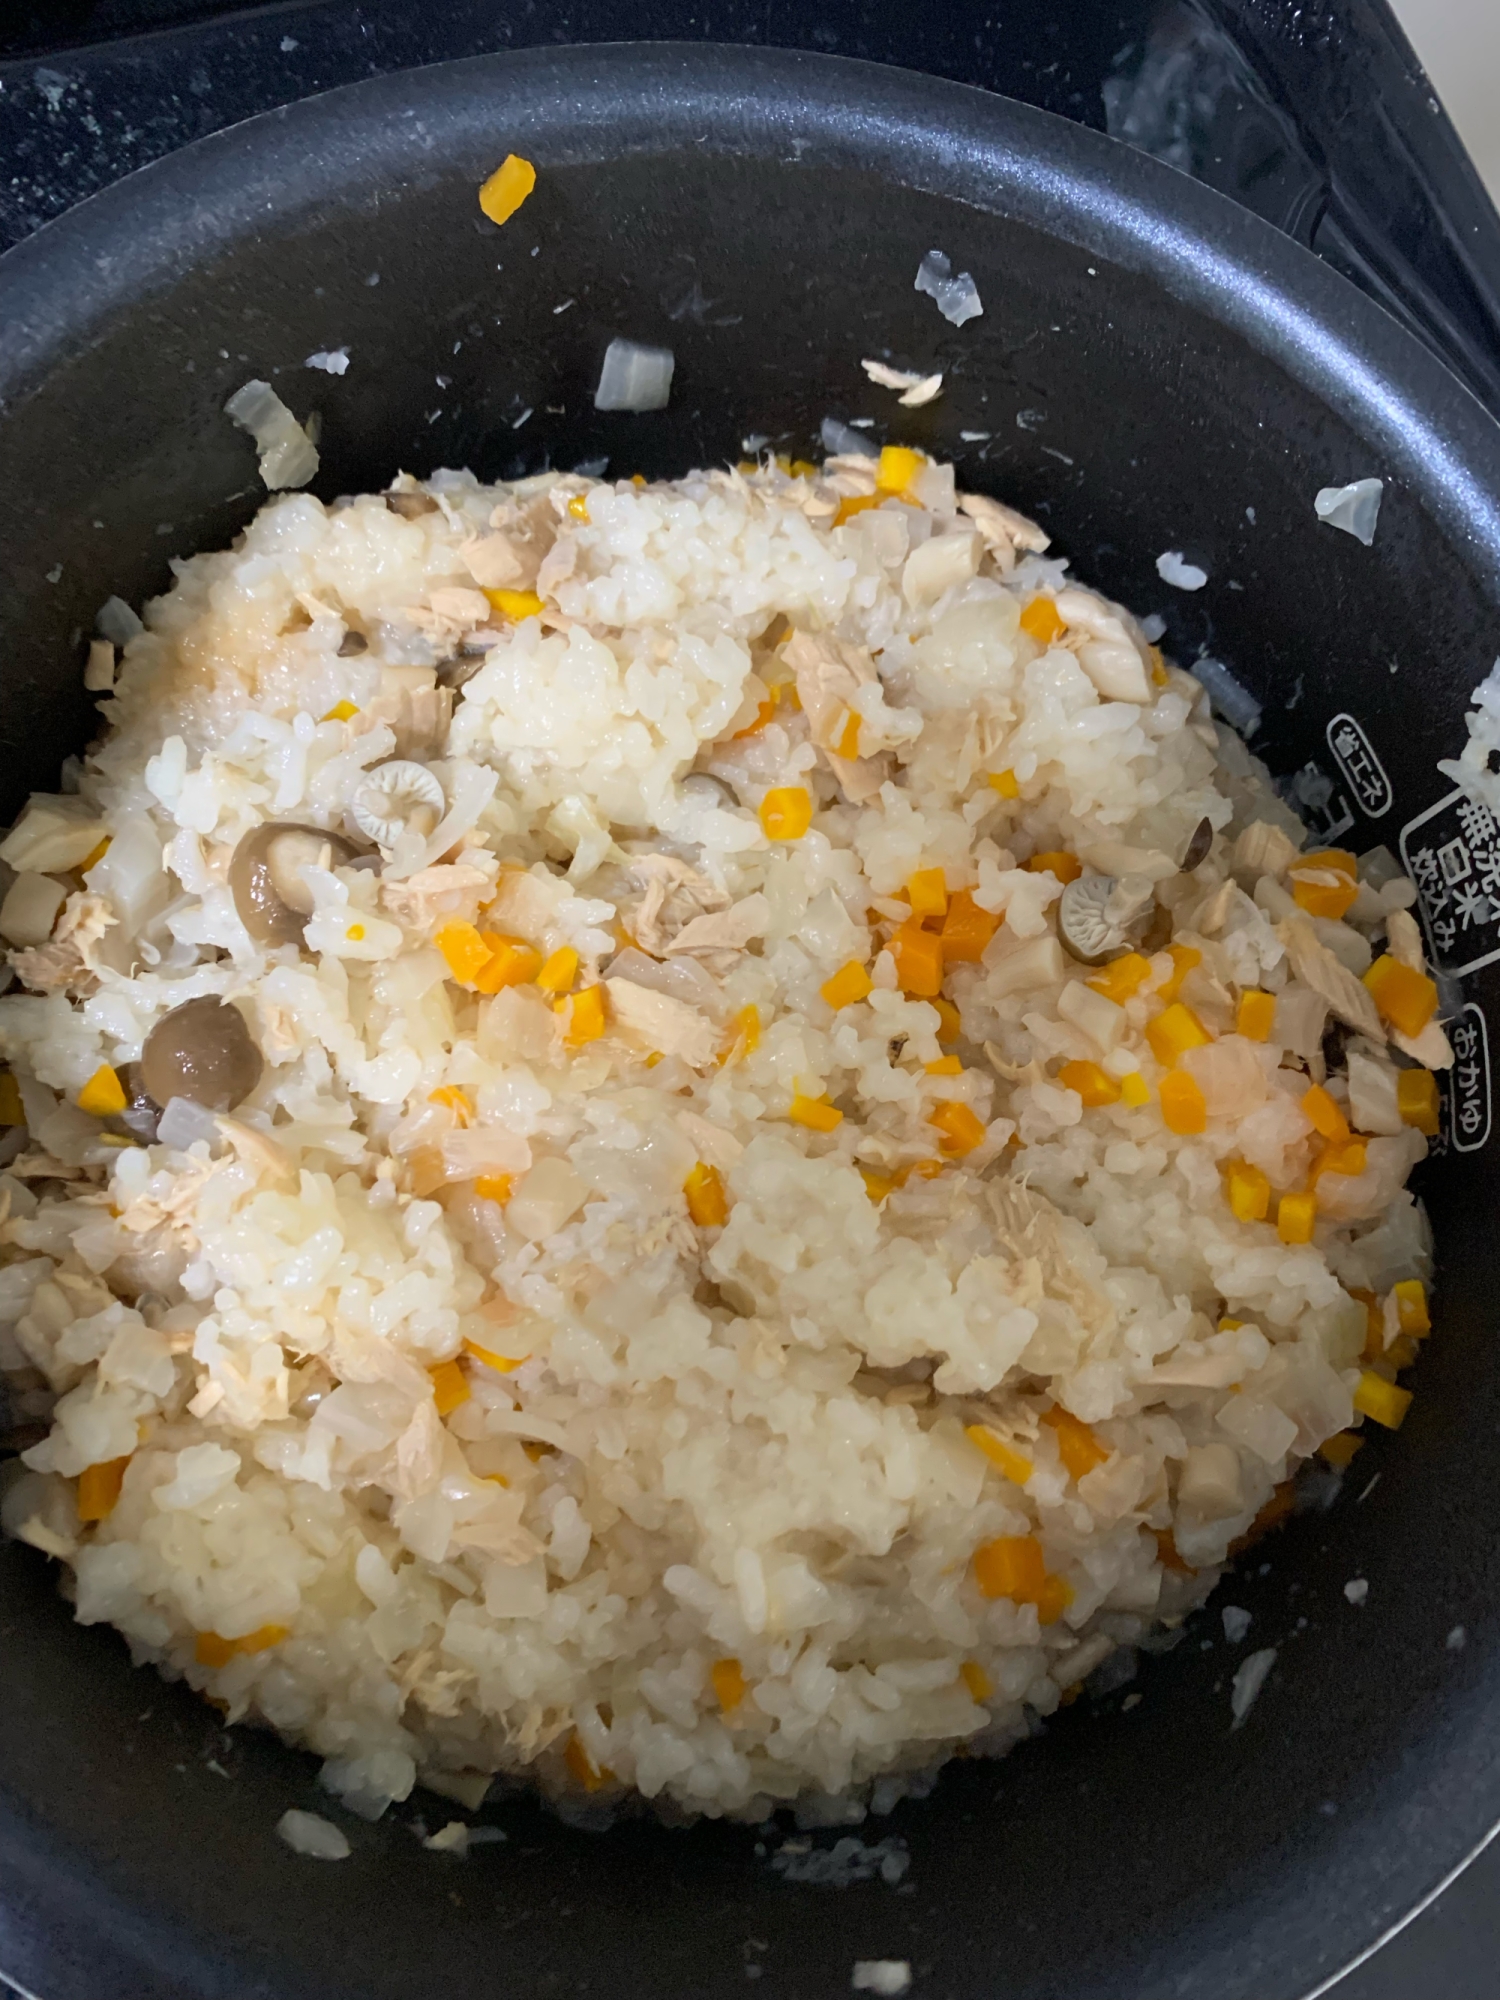 離乳食完了期に使えるツナの炊き込みご飯 レシピ 作り方 By Yopipi 楽天レシピ